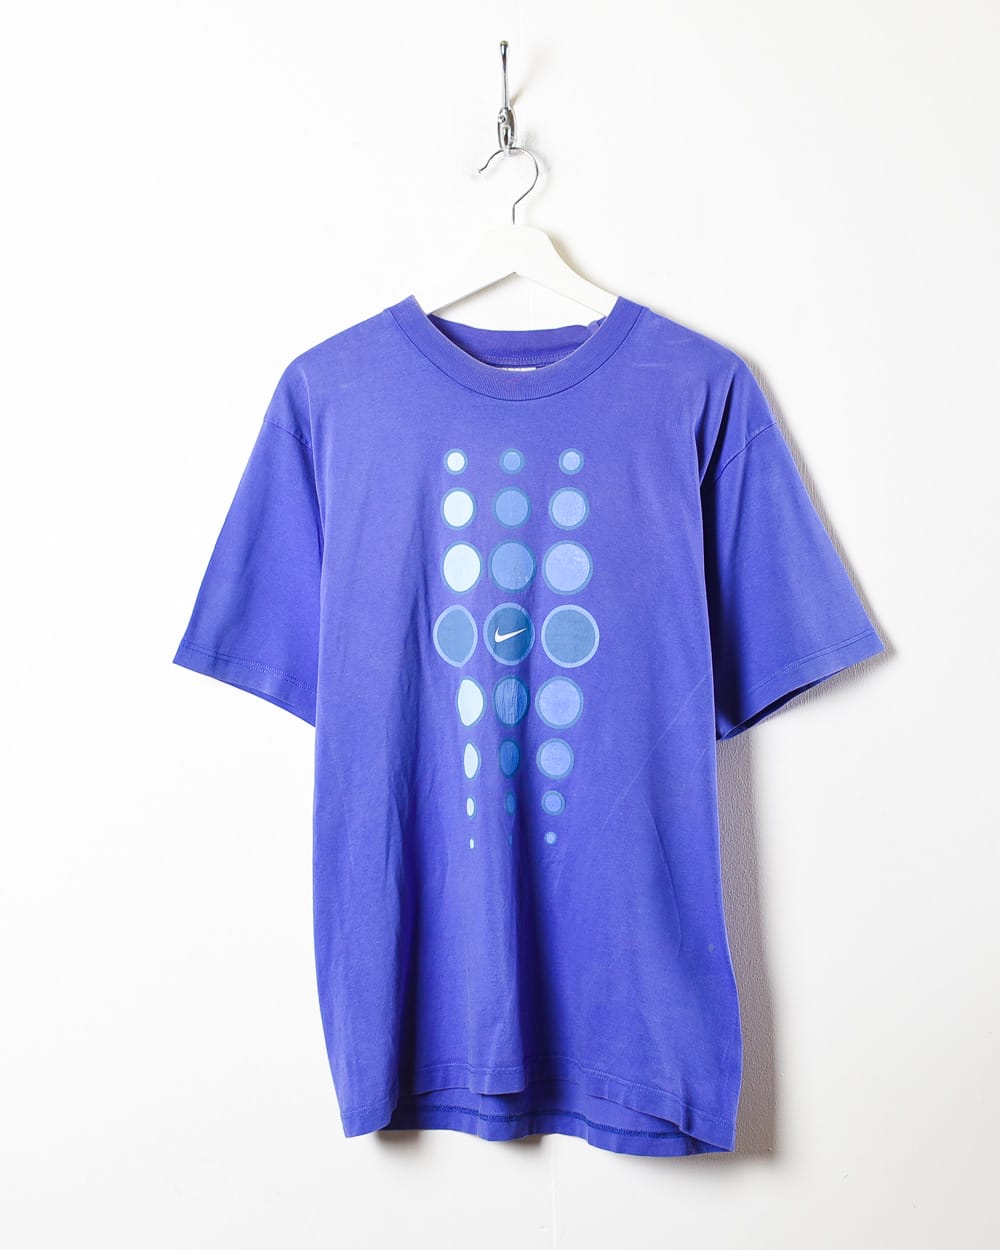 Blue Nike T-Shirt - Medium